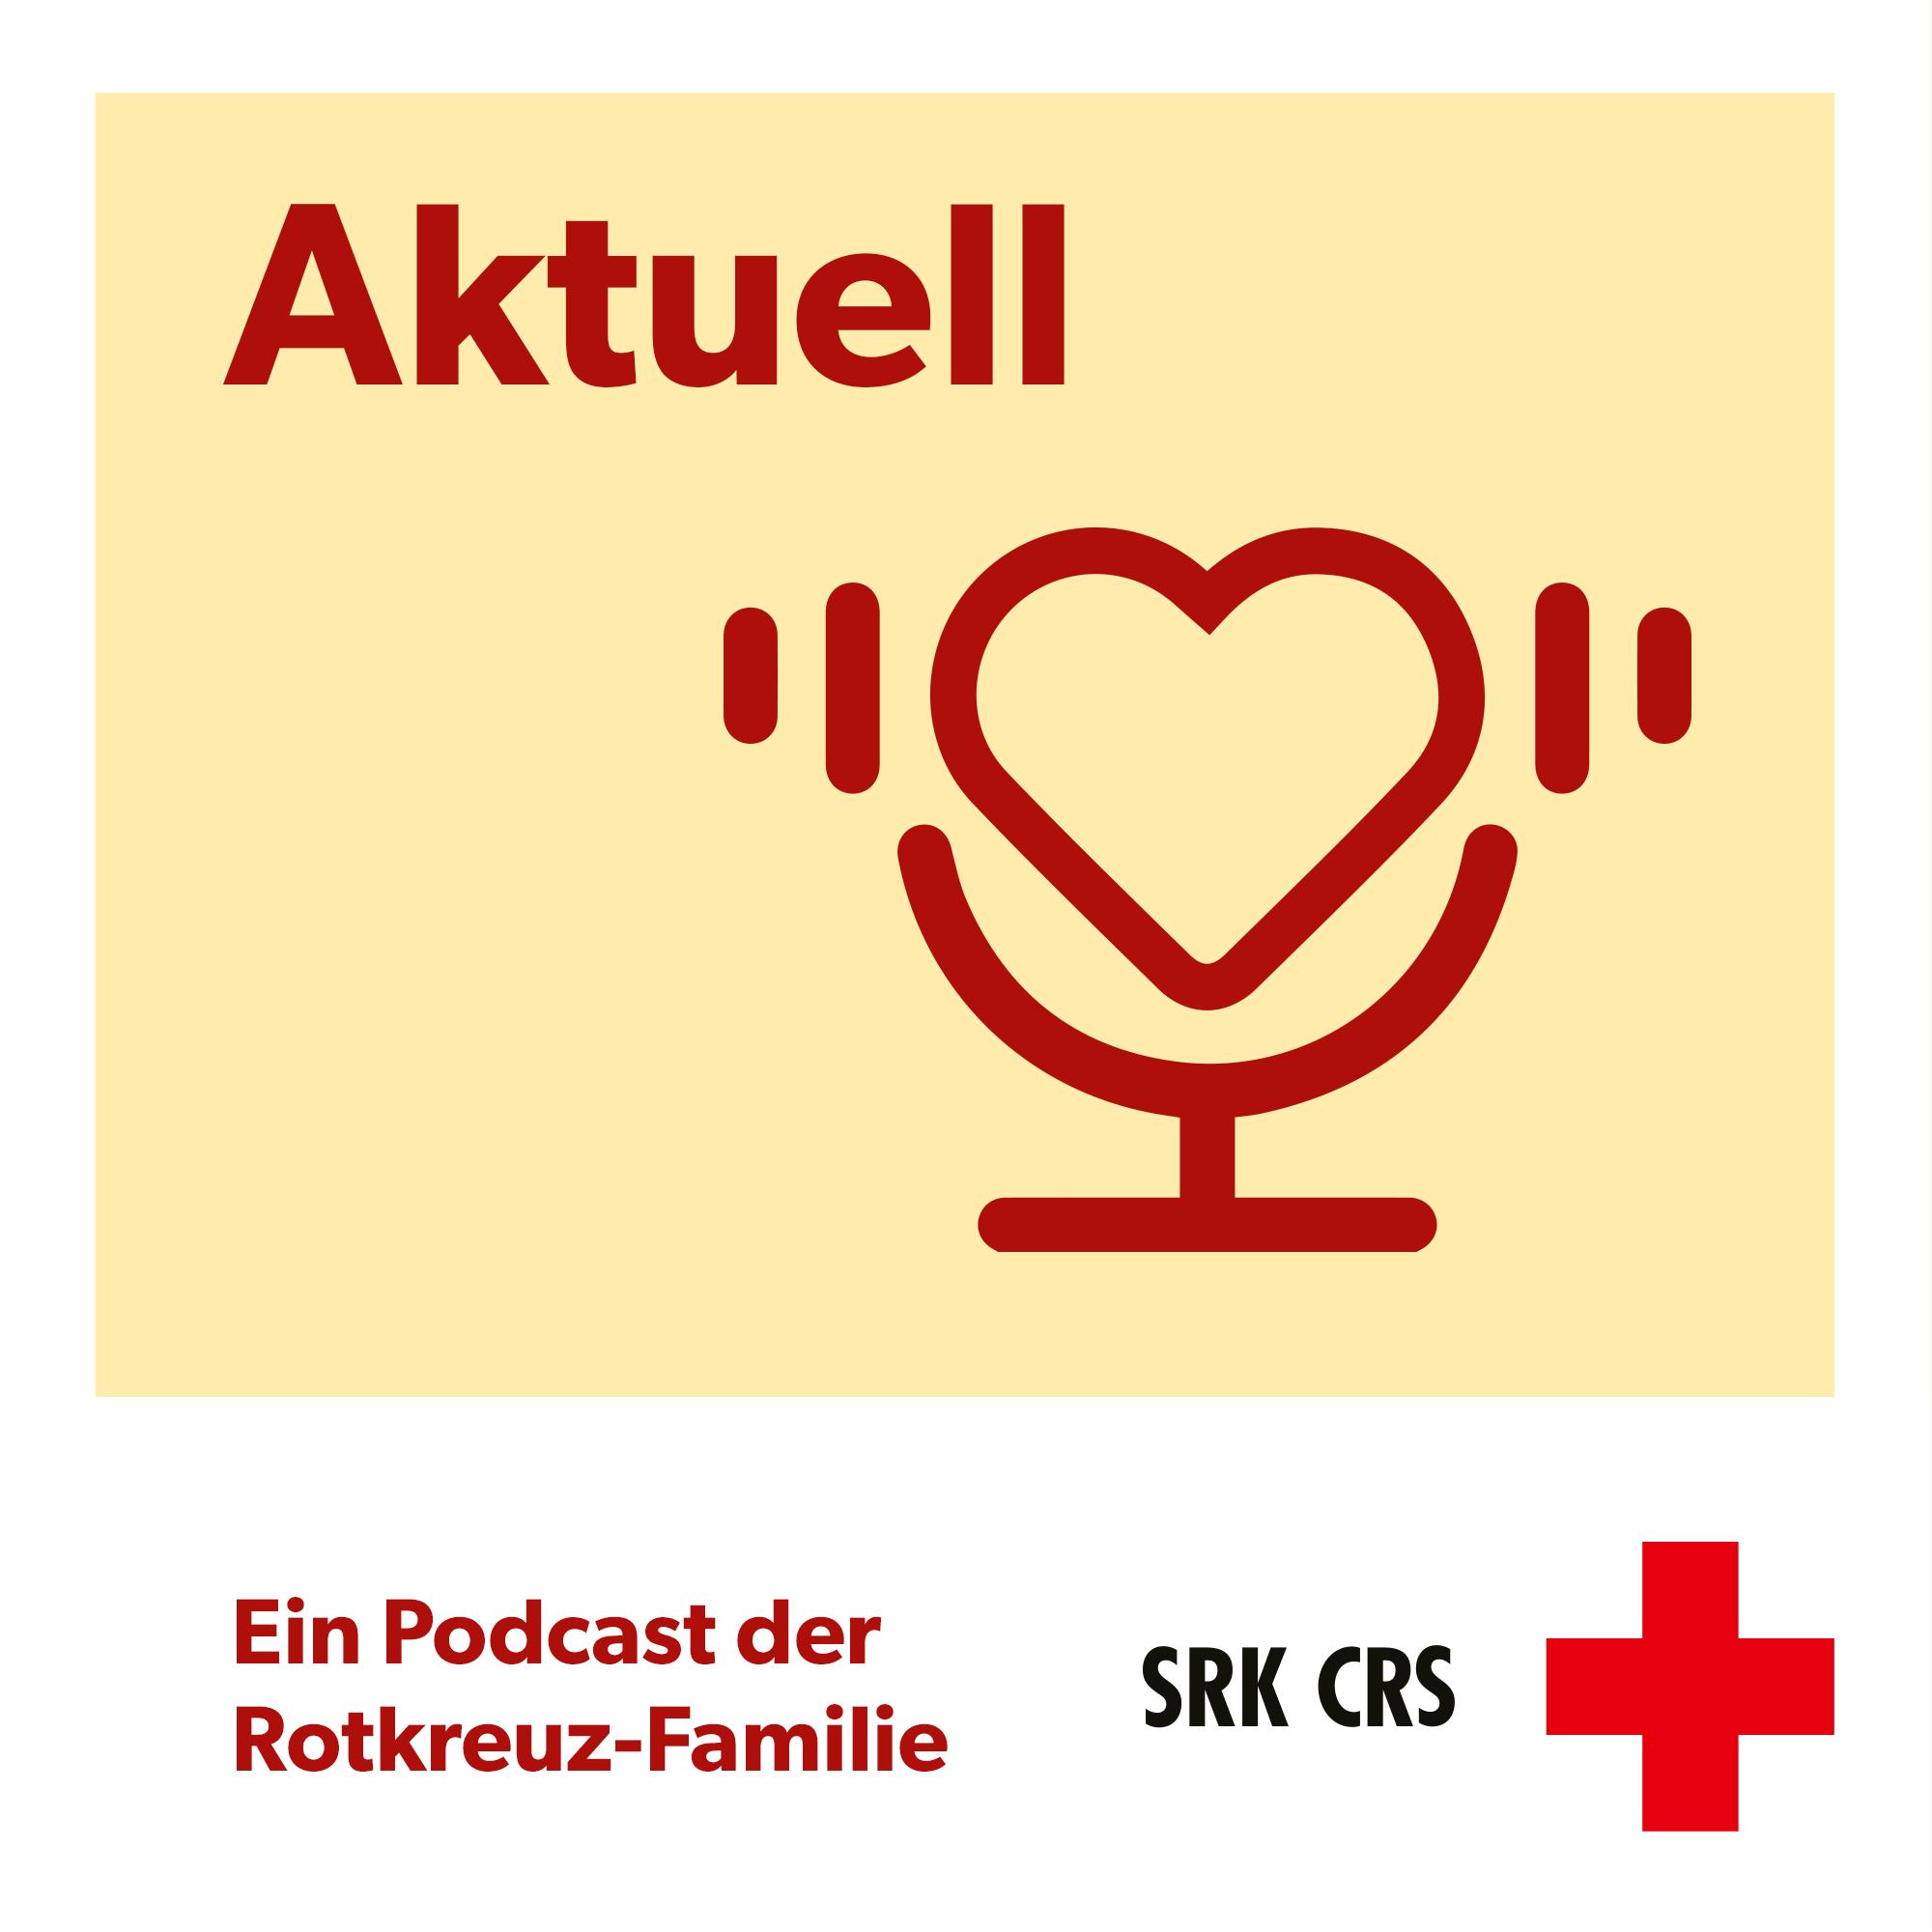 Logo del podcast della CRS «aktuell»: un microfono a forma di cuore su uno sfondo di colore giallo chiaro